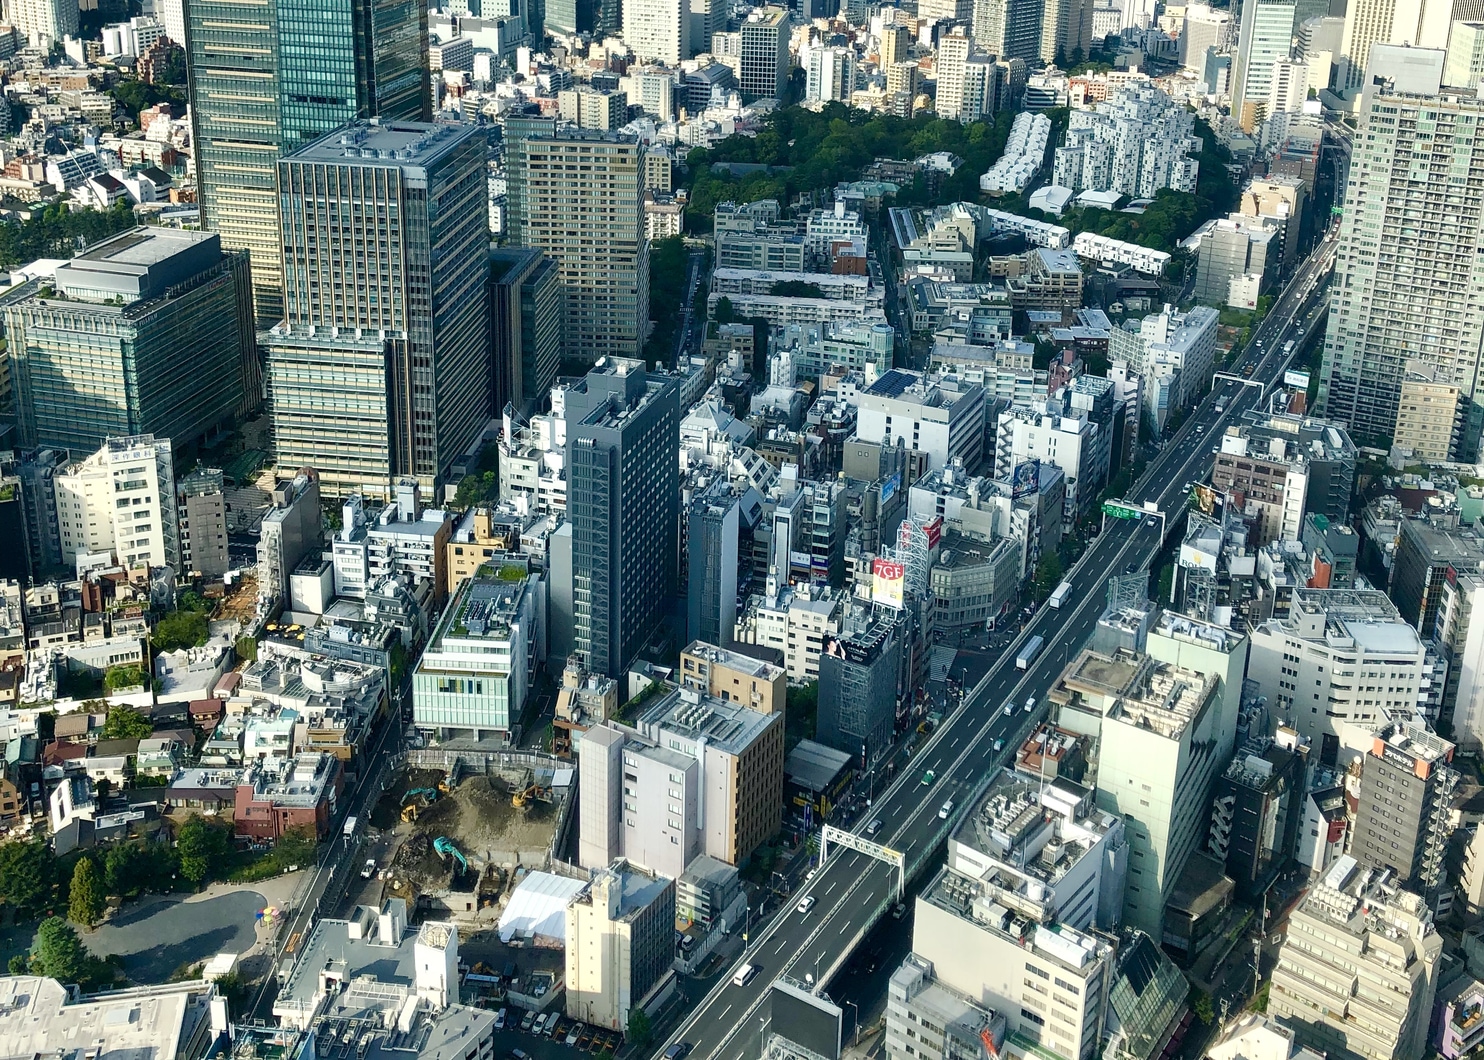 Tokyo Named “World’s Smartest City” for 2014